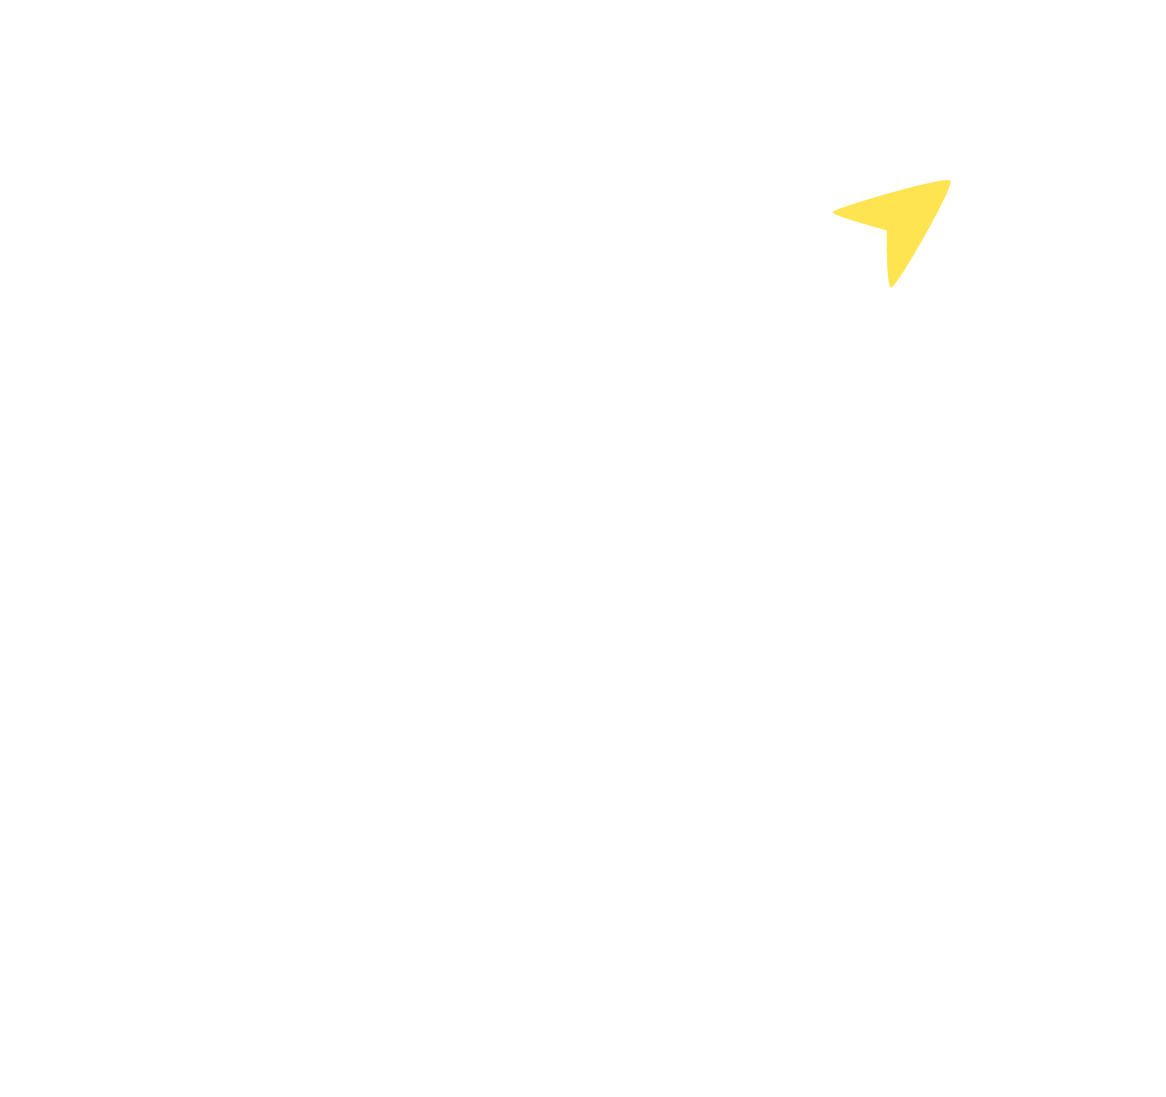 clinicone logo